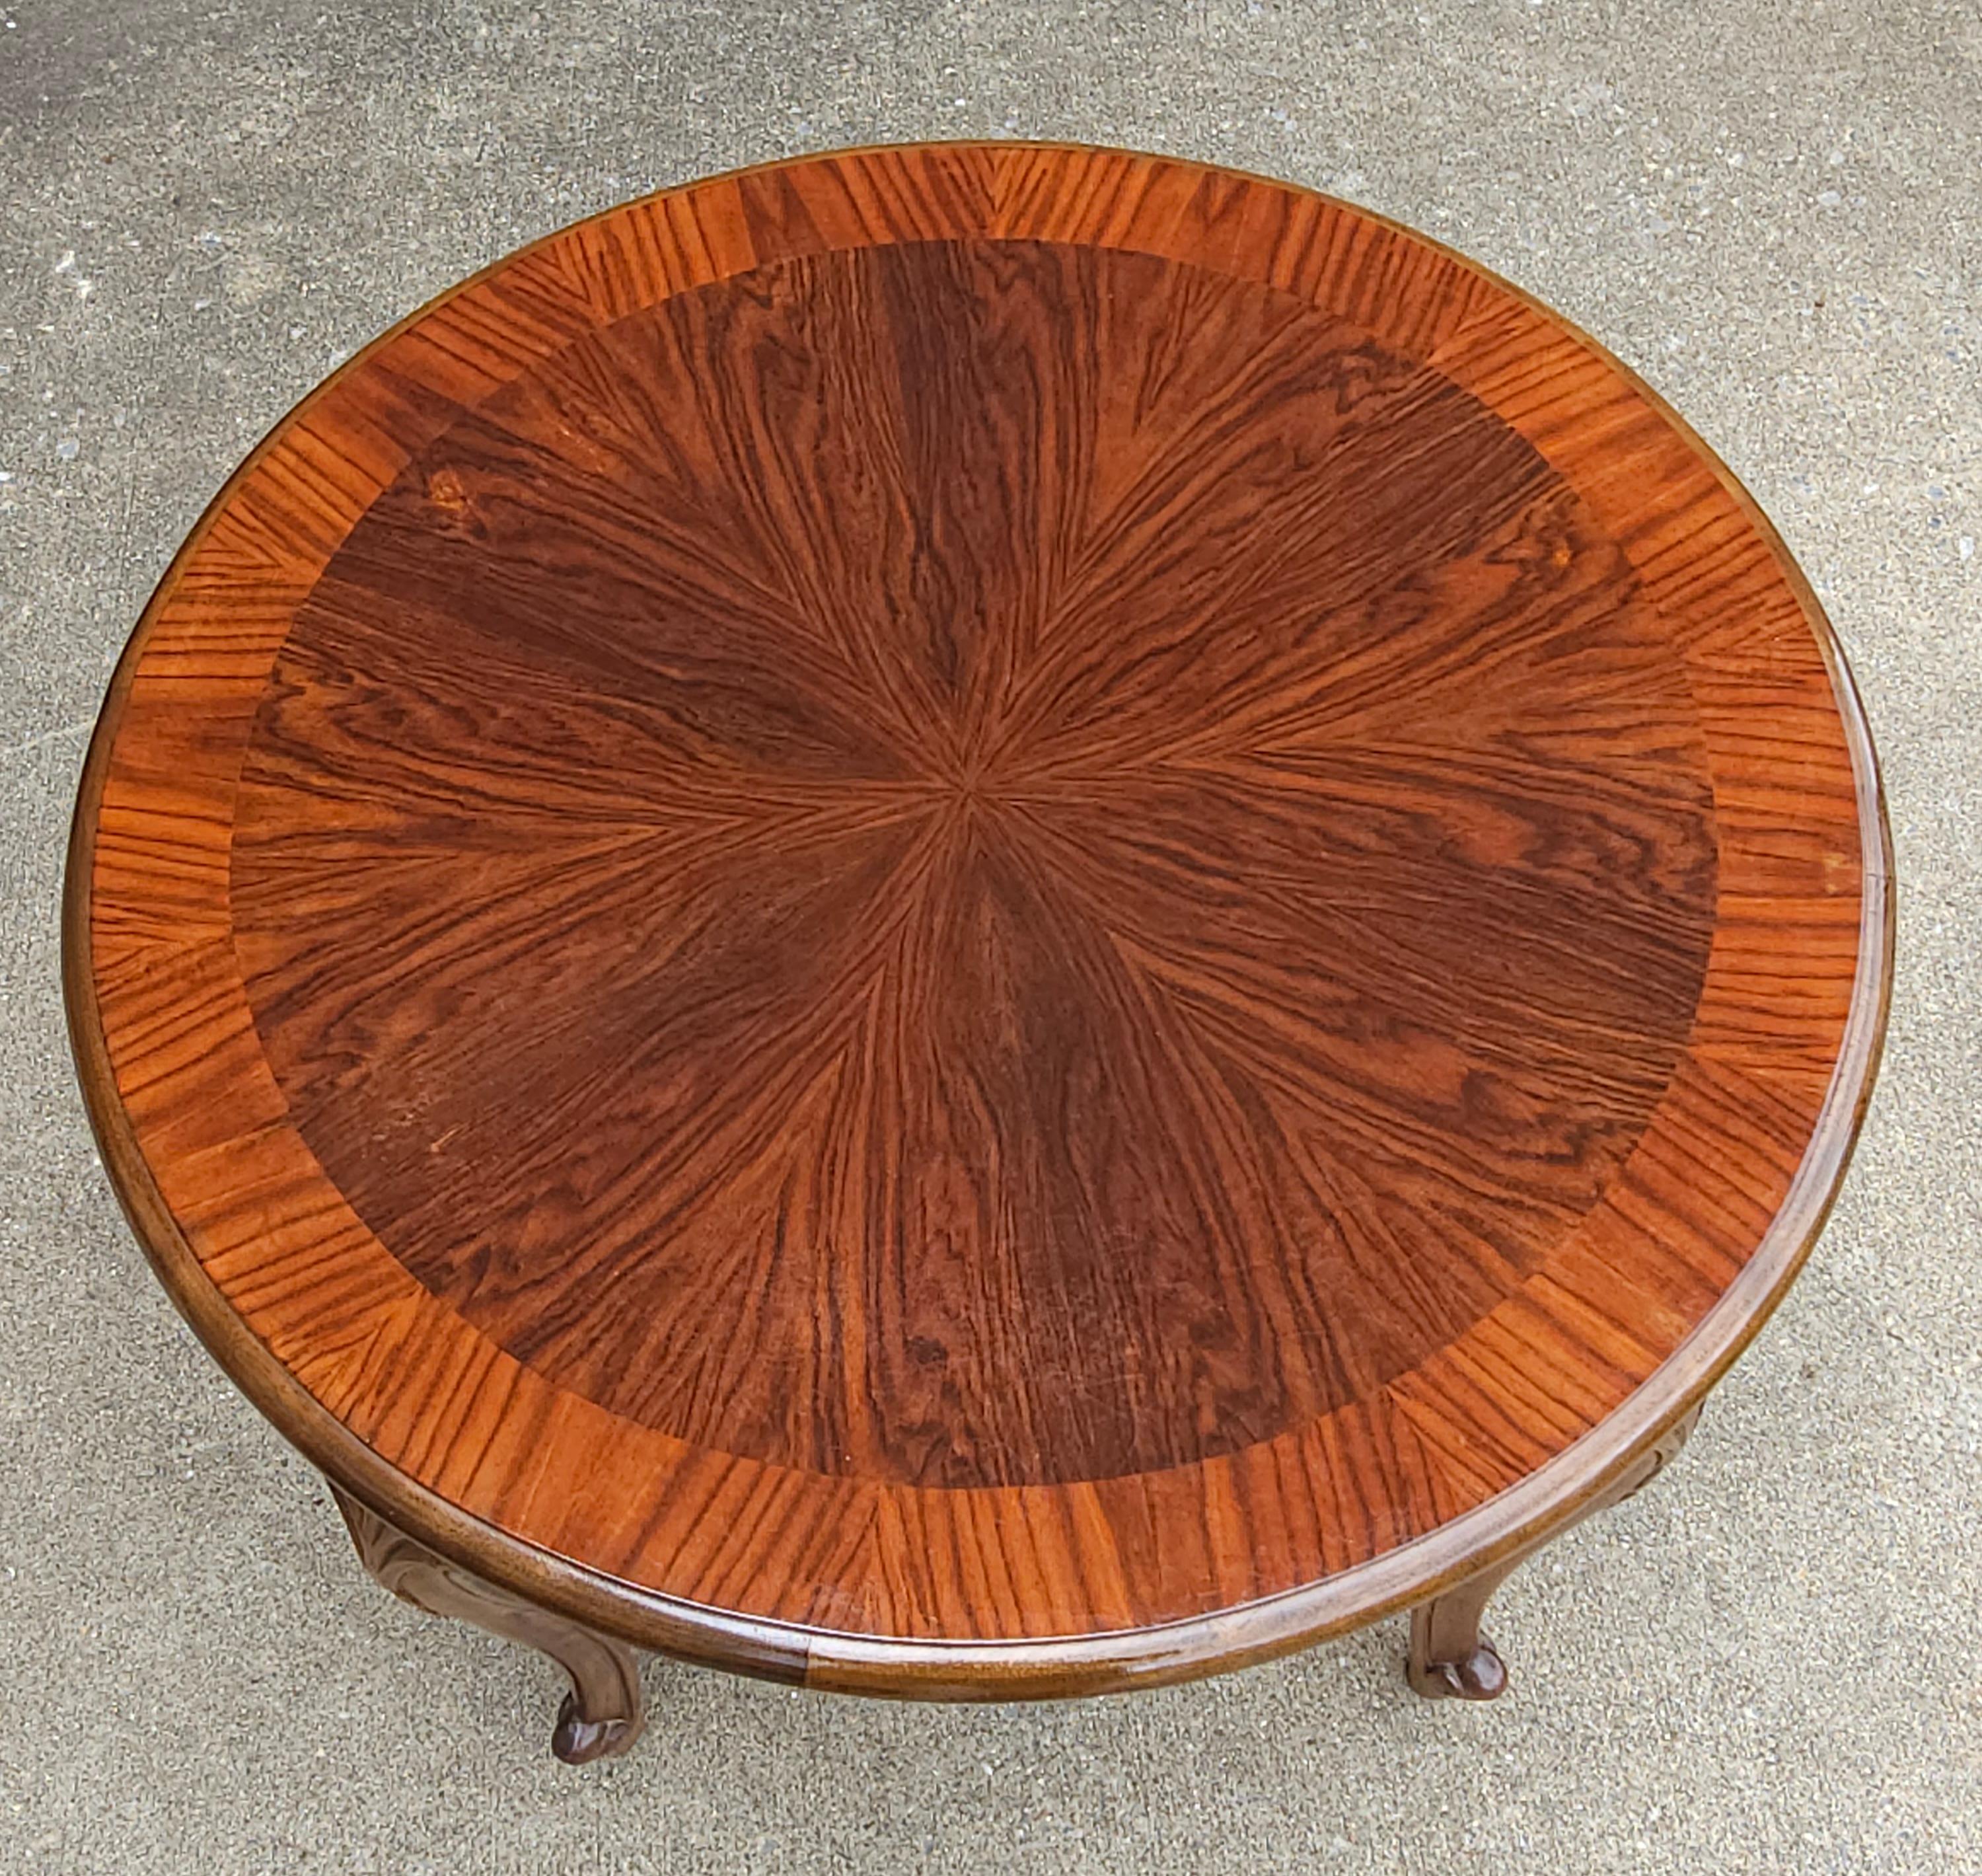 Ein sehr feiner handgefertigter Gueridon-Tisch aus brasilianischem Palisanderholz. Brasilianisches Palisanderholz ist eines der seltensten und begehrtesten Palisanderhölzer der Welt. Brasilianisches Palisanderholz ist bekannt für seine bunt